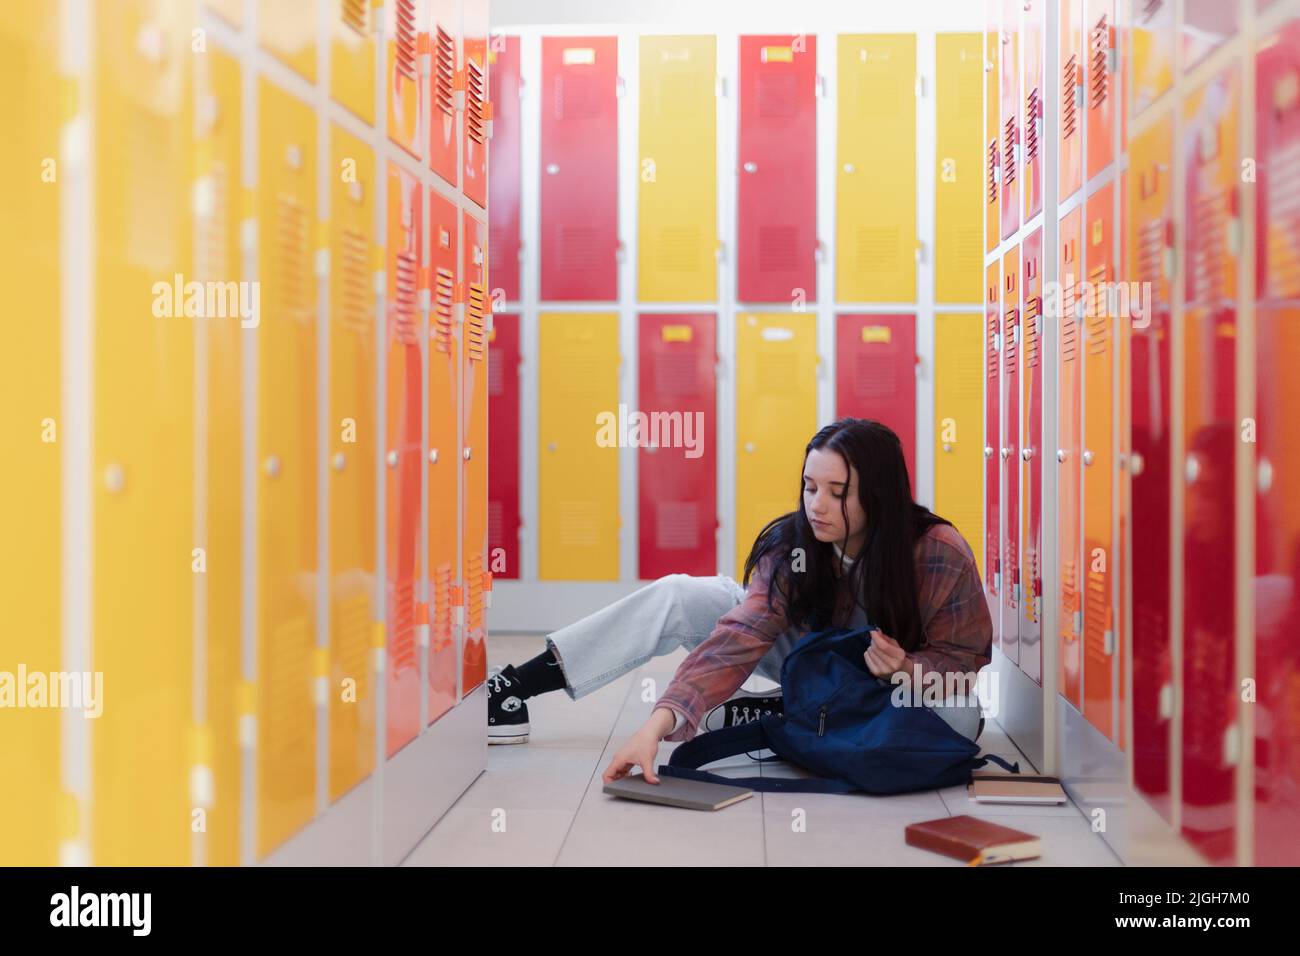 Estudiante adolescente sentado en el pasillo cerca de casilleros coloridos y empacando libro a mochila en el pasillo del campus, concepto de regreso a la escuela. Foto de stock